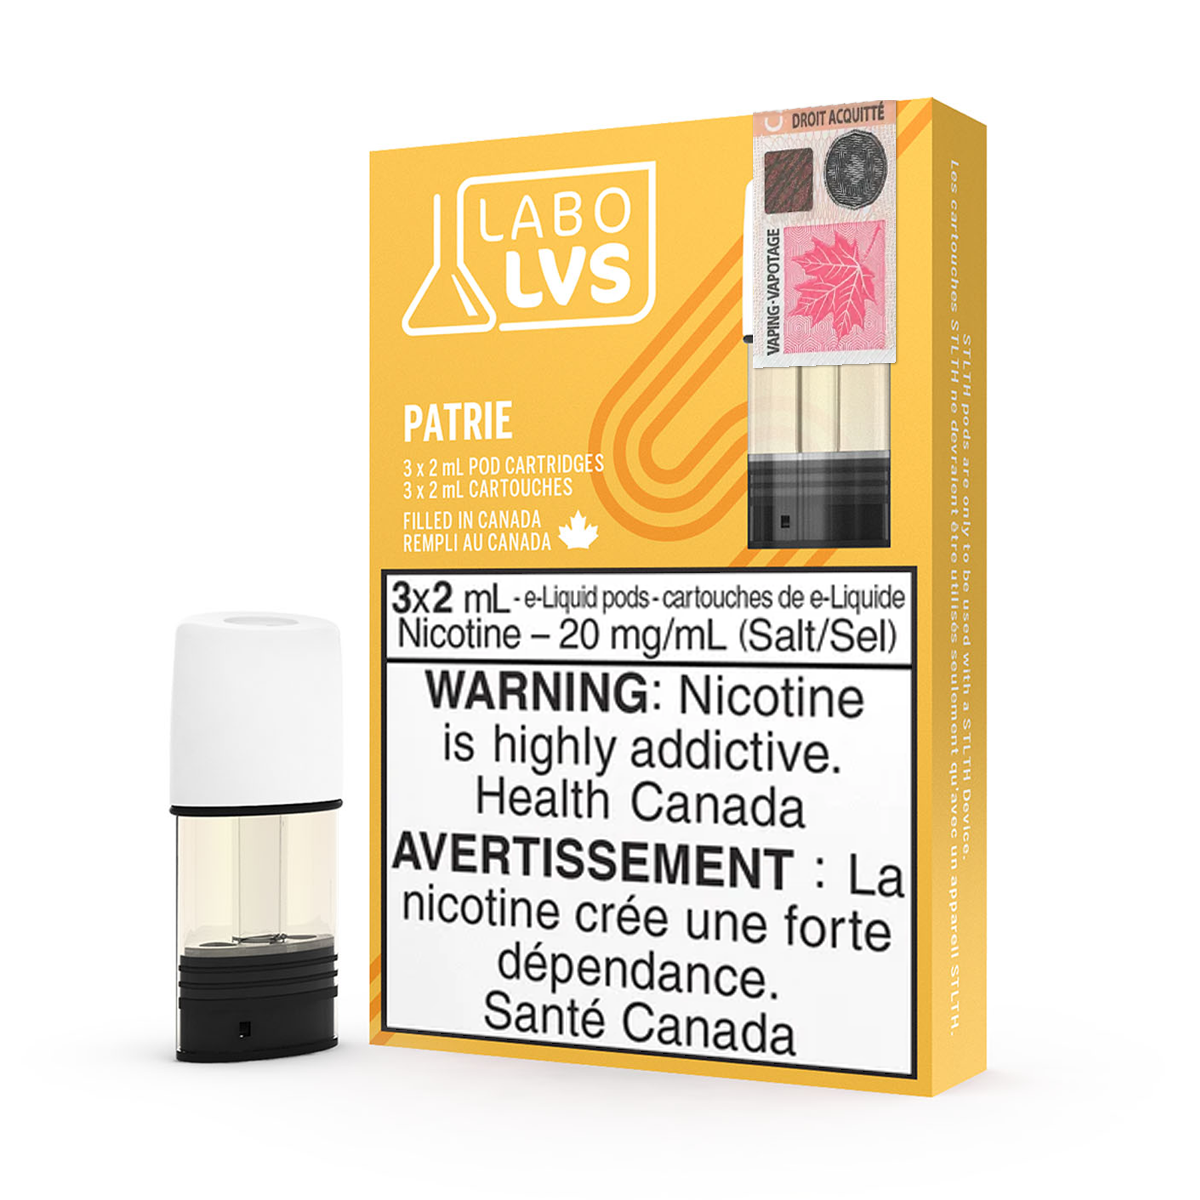 Labo Lvs STLTH Pods - Patrie (3x2mL) (6619810660407)